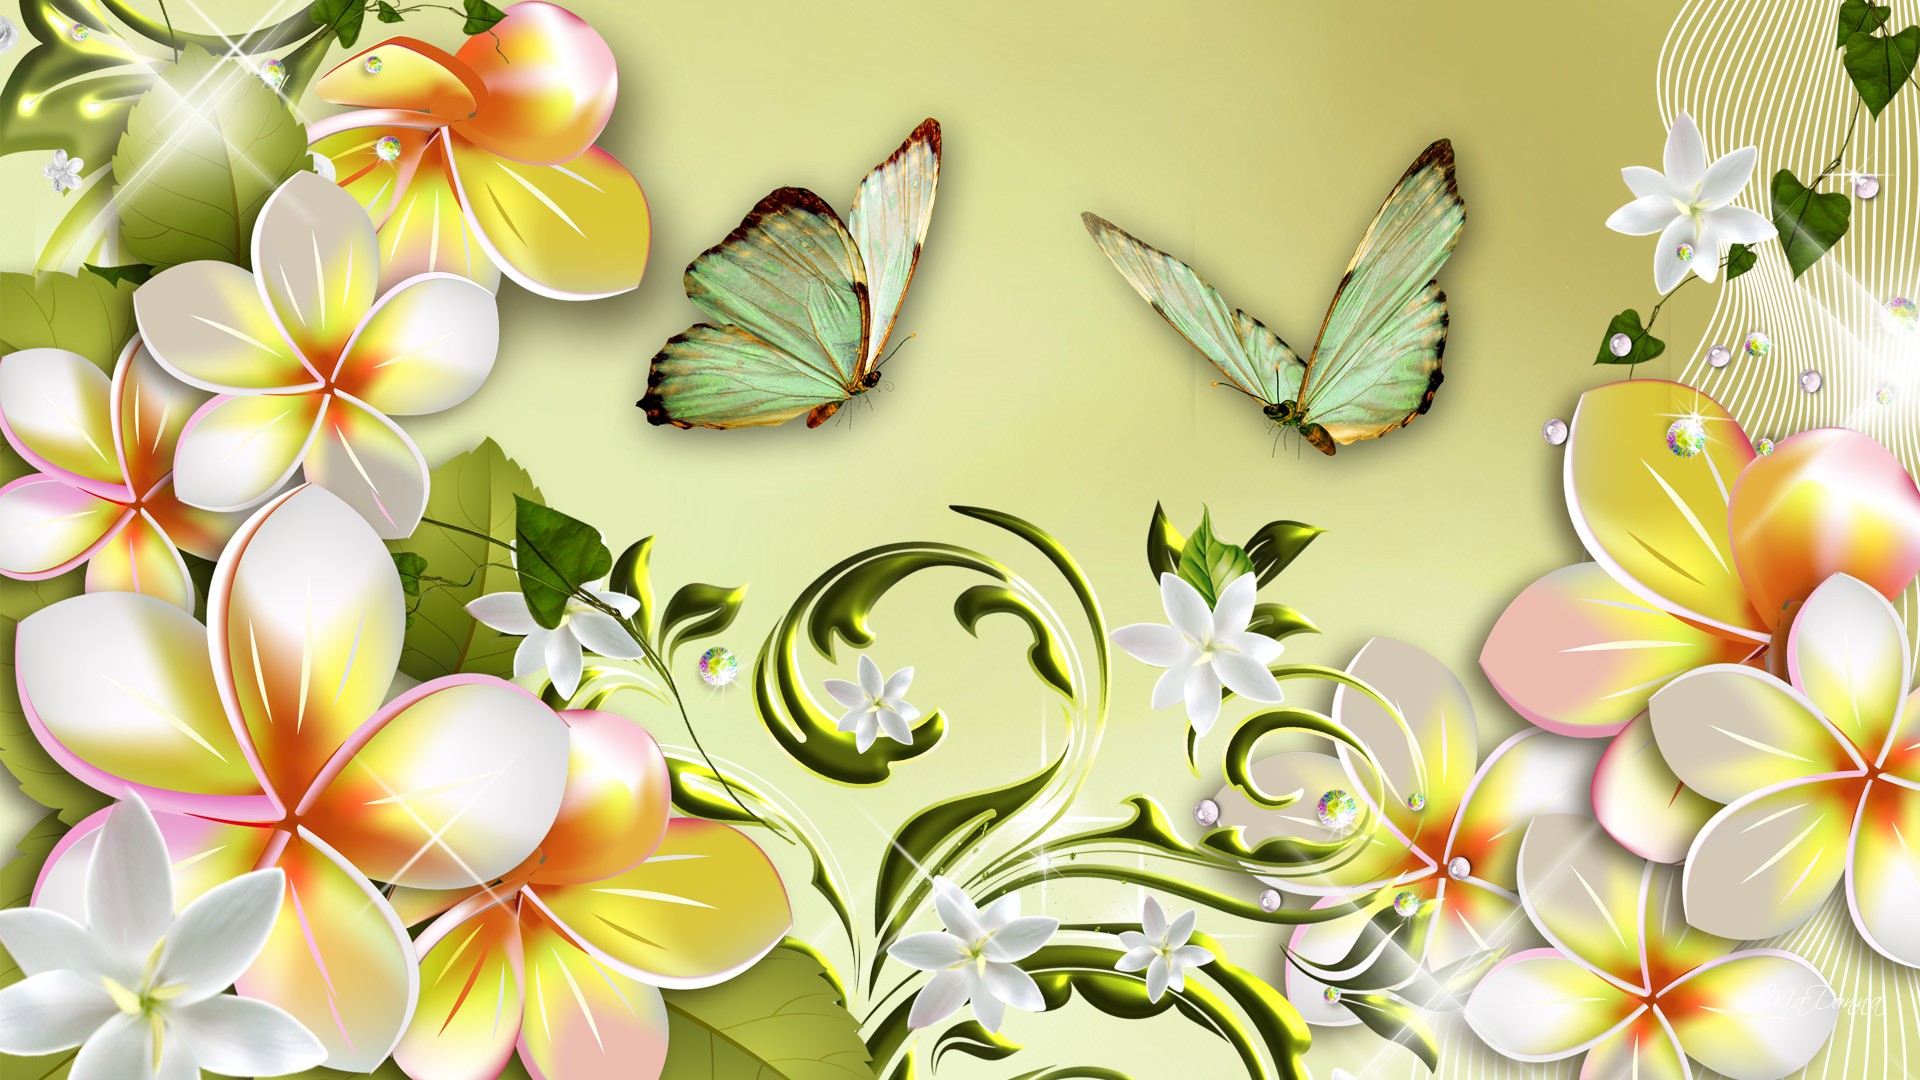 HD desktop wallpaper: Flowers, Flower, Butterfly, Artistic, Plumeria  download free picture #415071